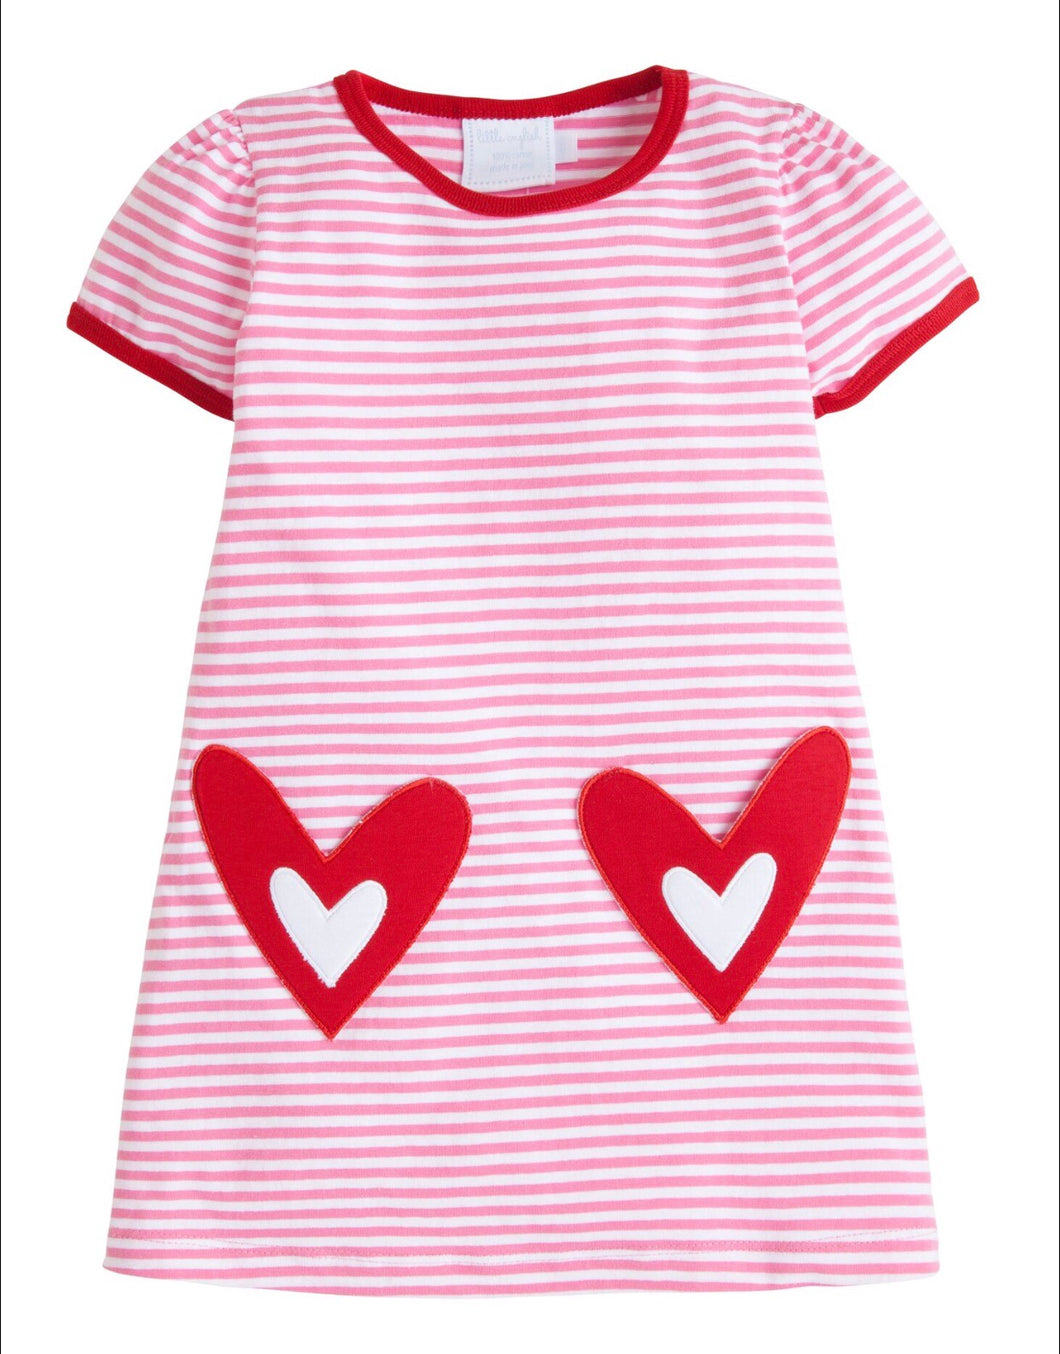 Hearts T-shirt Dress